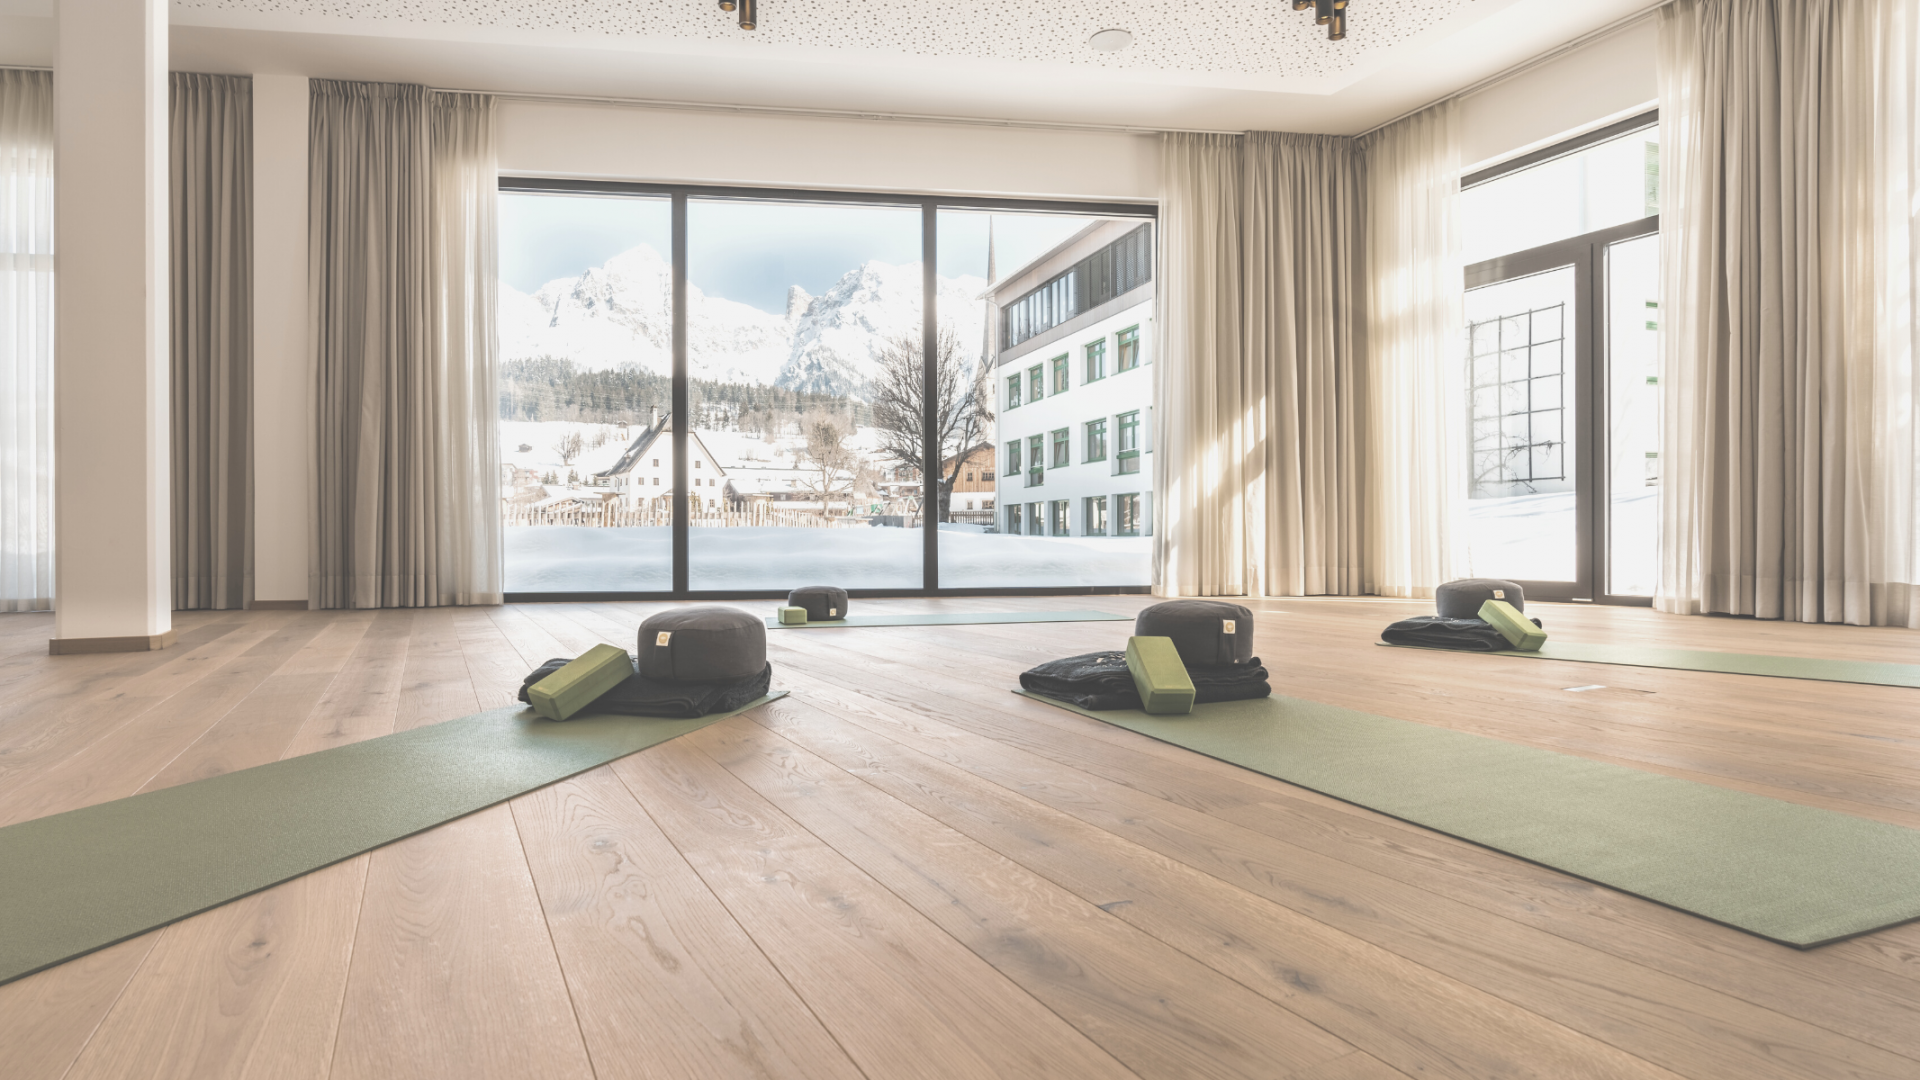 Fitnessraum mit Yogamatte in hellen Farben